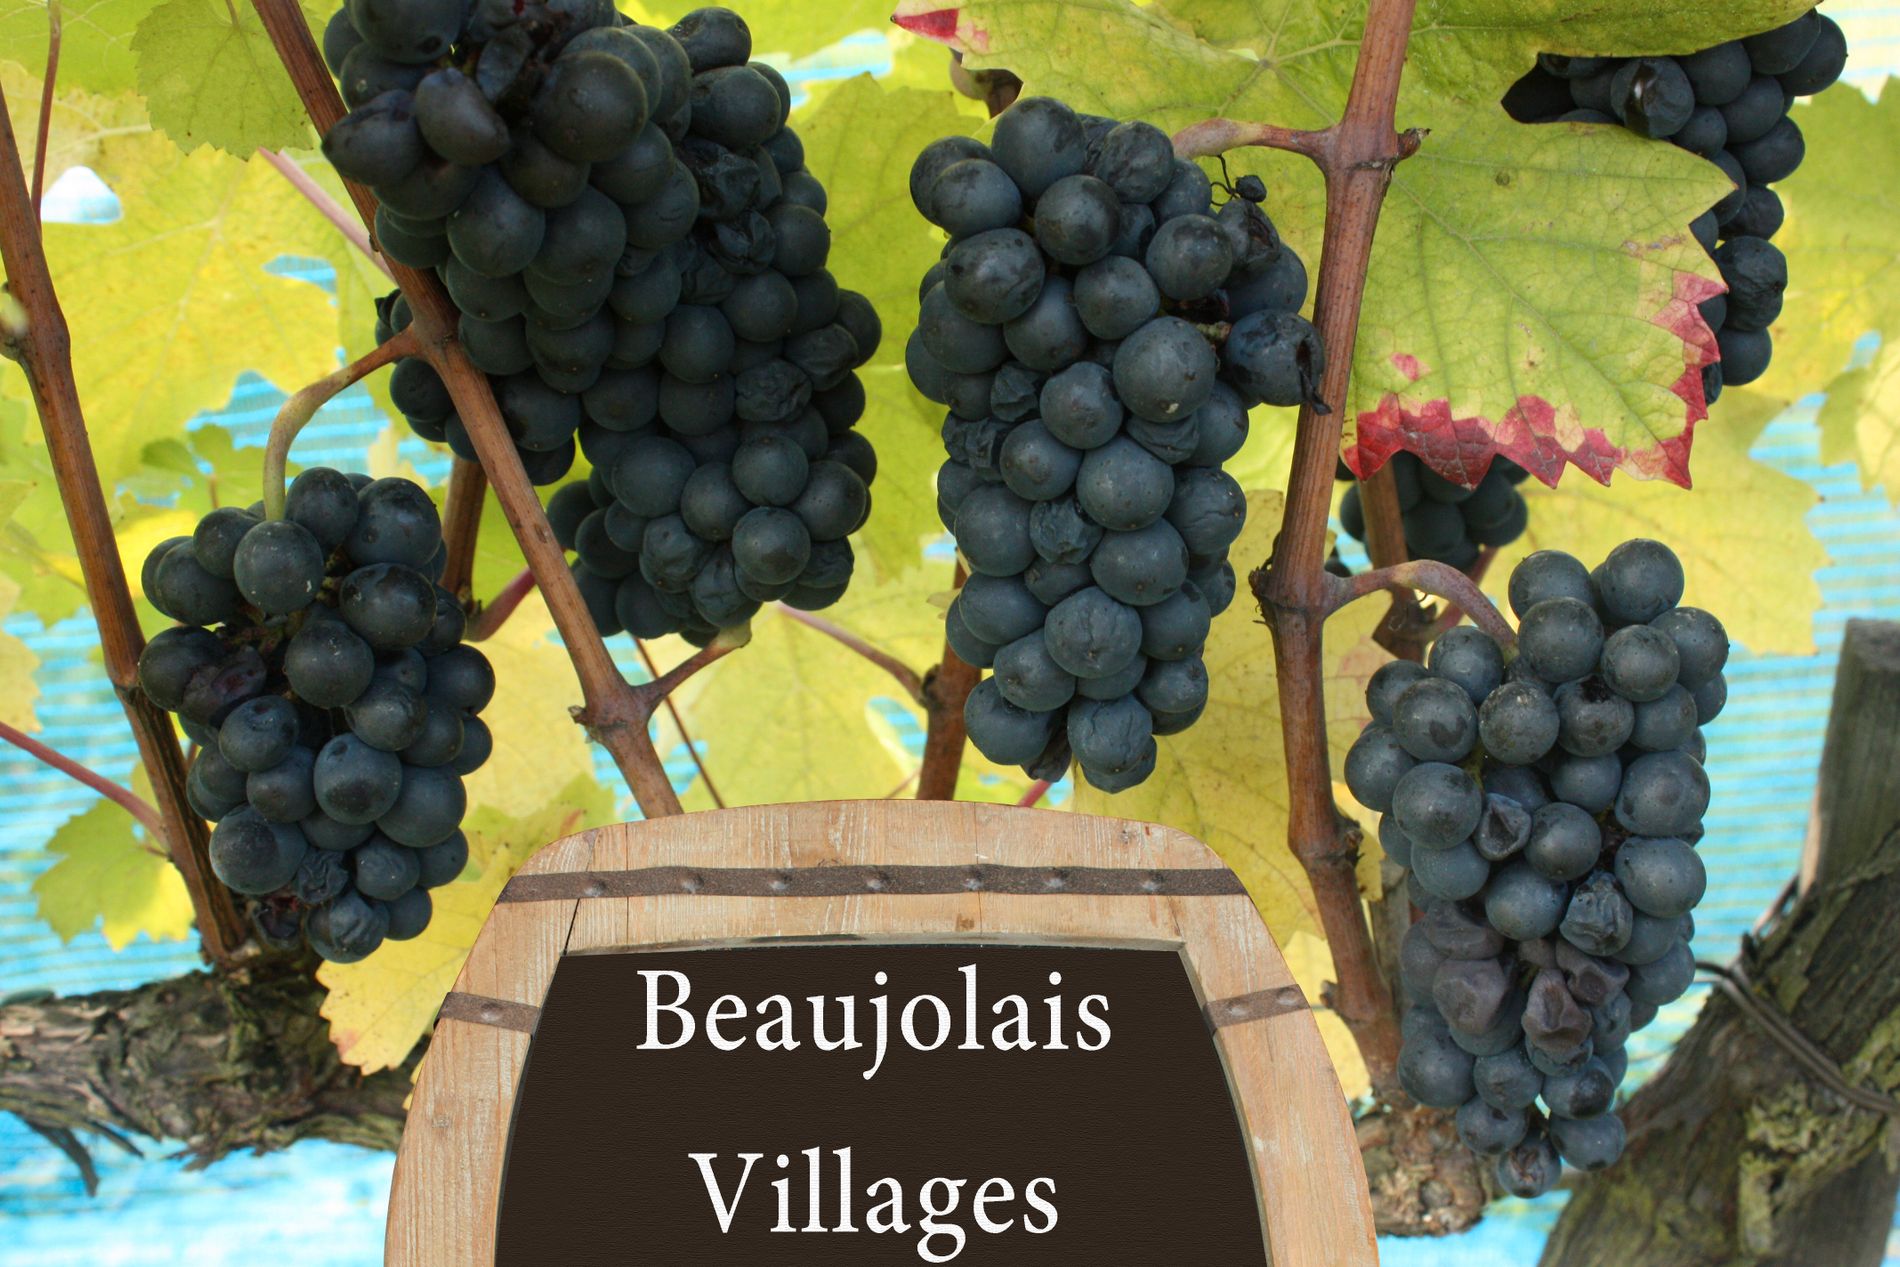 Beaujolais är ett vindistrikt i södra delen av Bourgogne i Frankrike och ”nouveau” är franska för ”ny”. 